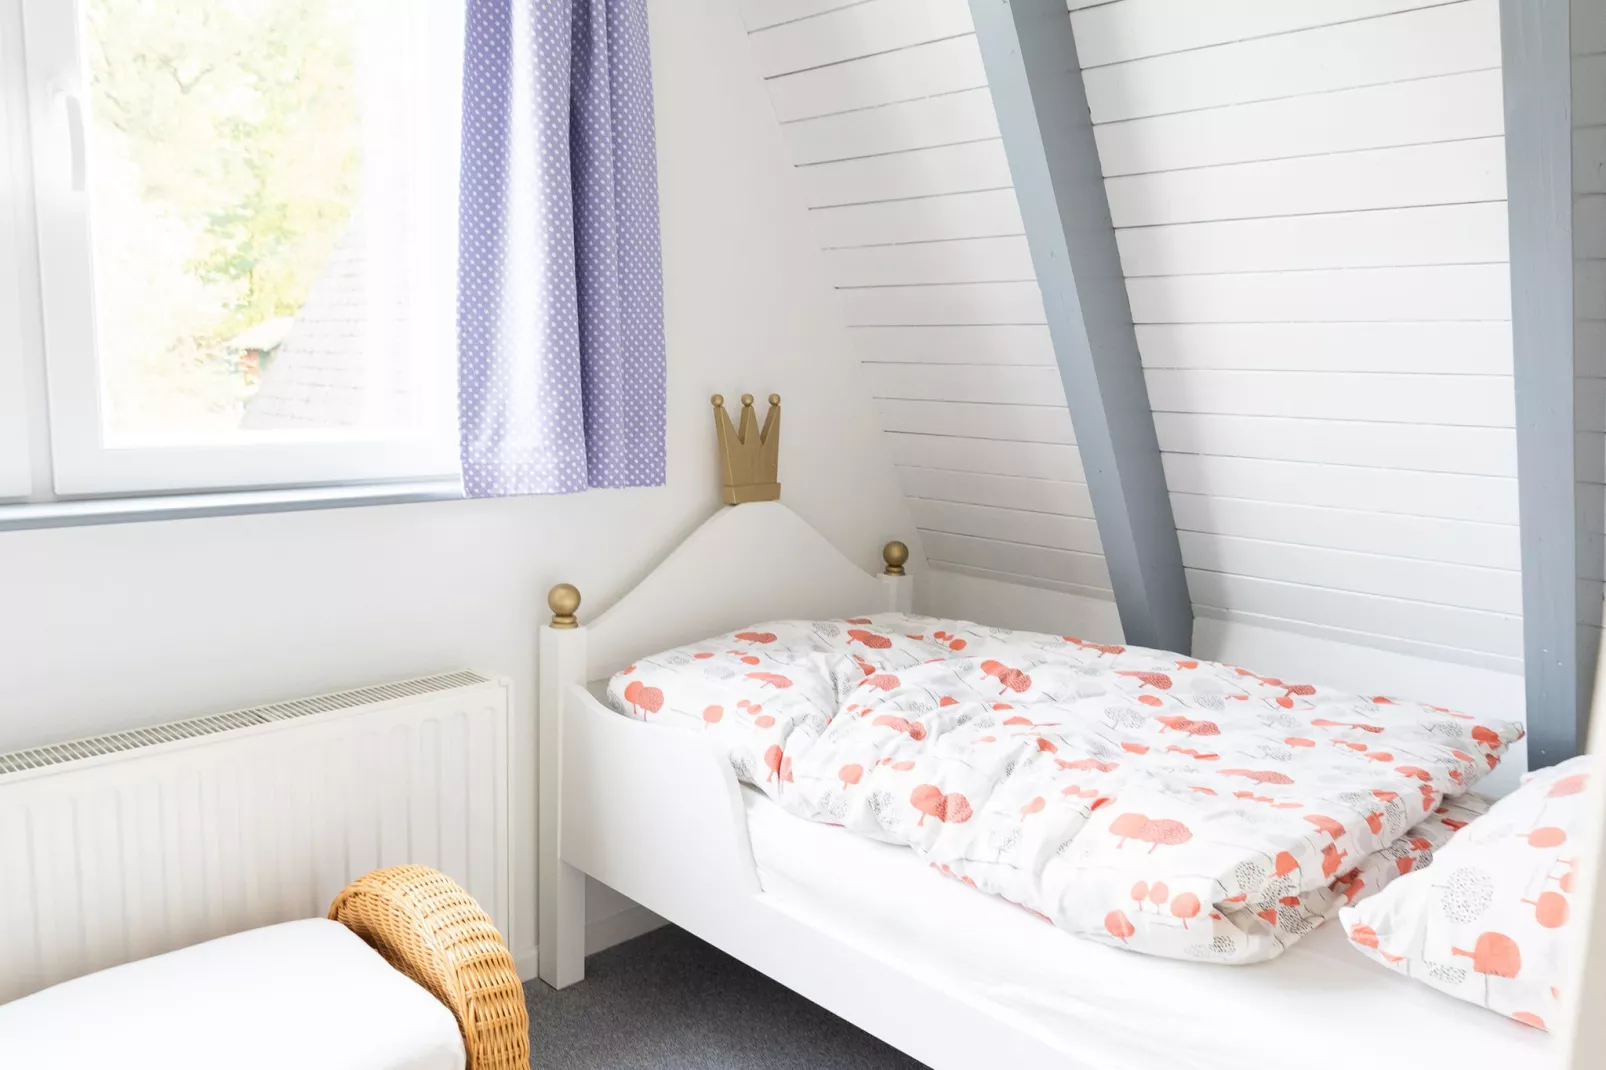 Vakantiehuis in Bestwig met eigen tuin-Slaapkamer